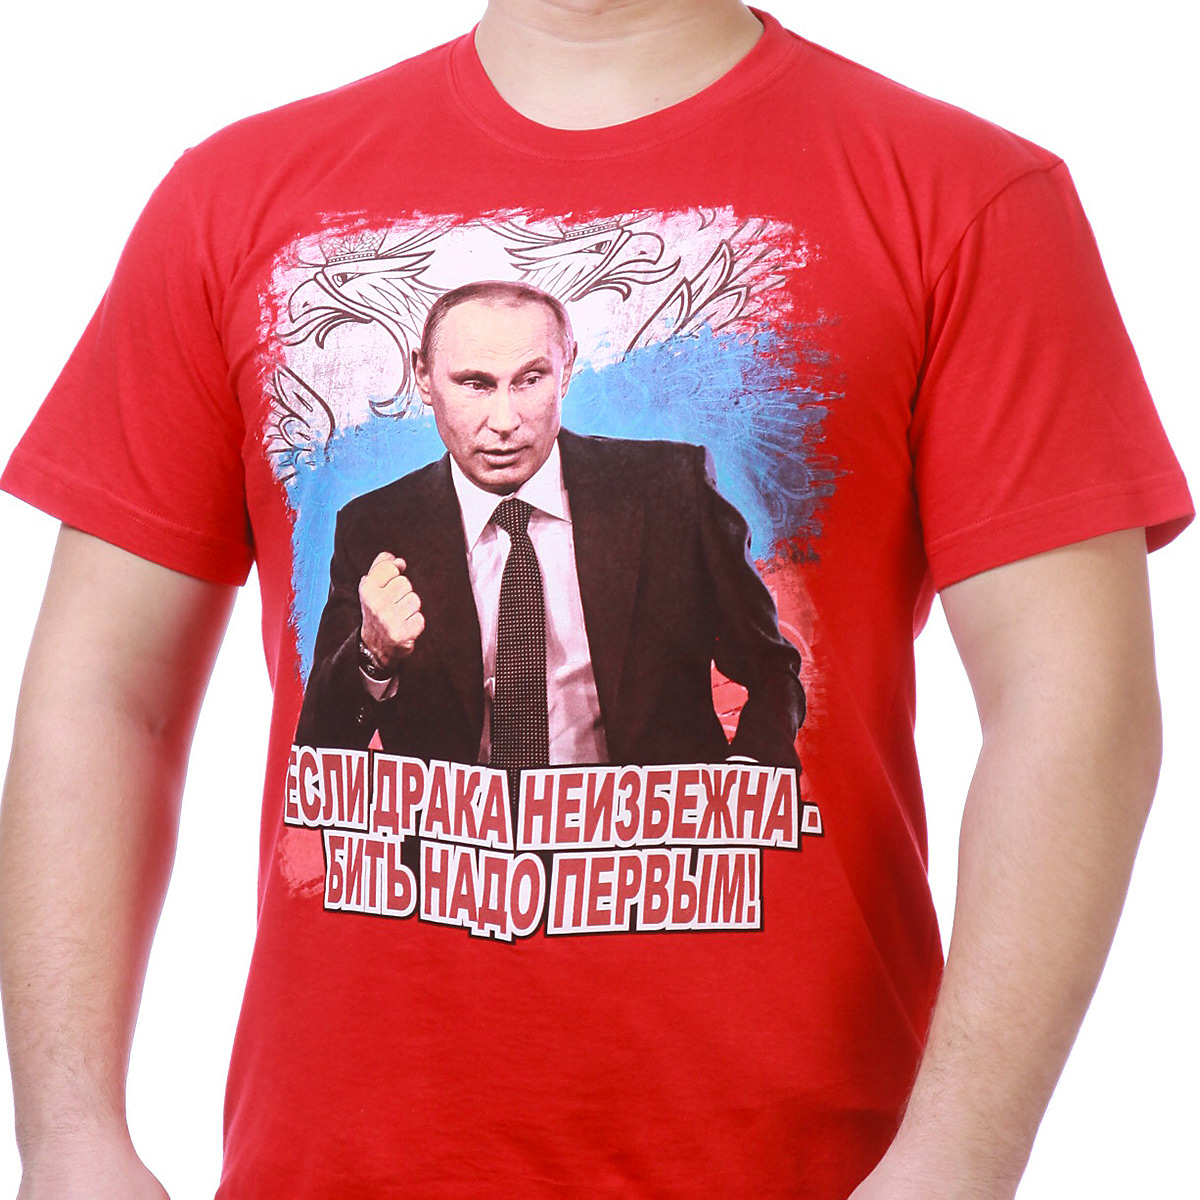 Купить футболки с Путиным по такой низкой цене можно только в Военпро.